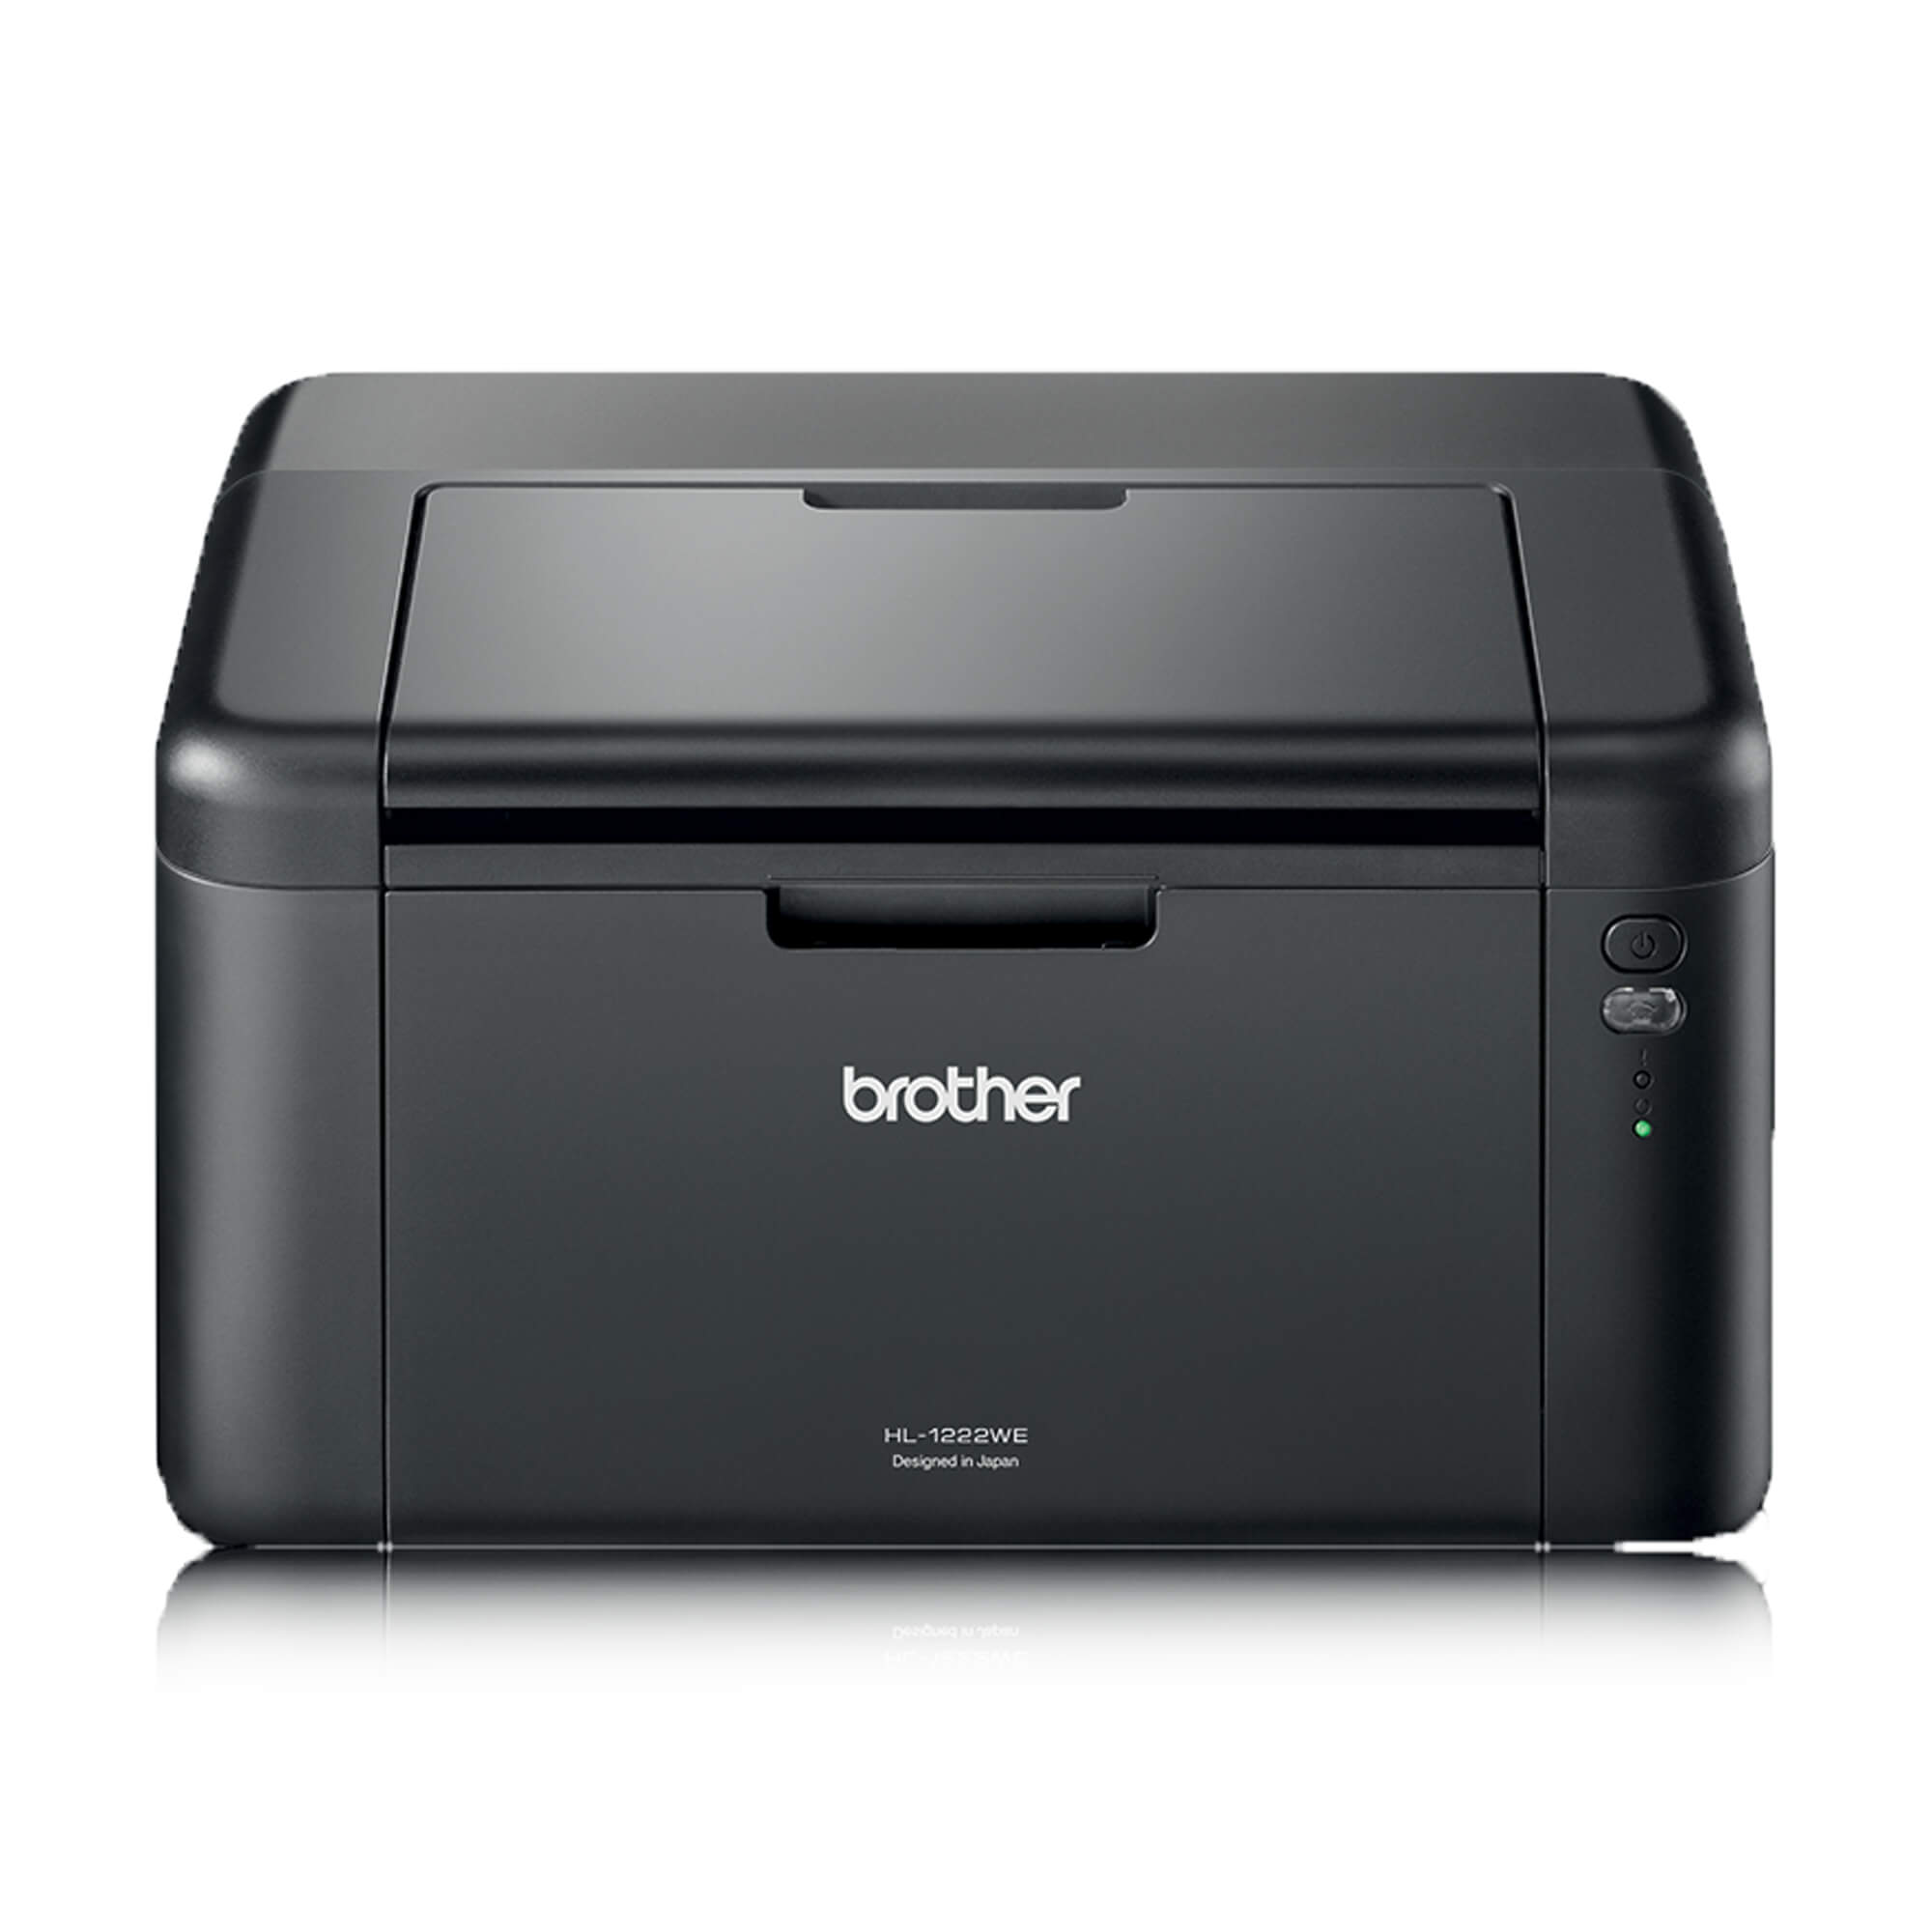 Лазерный принтер для фотографий. Лазерный принтер brother hl-1202r. Brother DCP-1602r. Лазерный принтер brother hl-1202r – компактная модель. Brother 1602r.